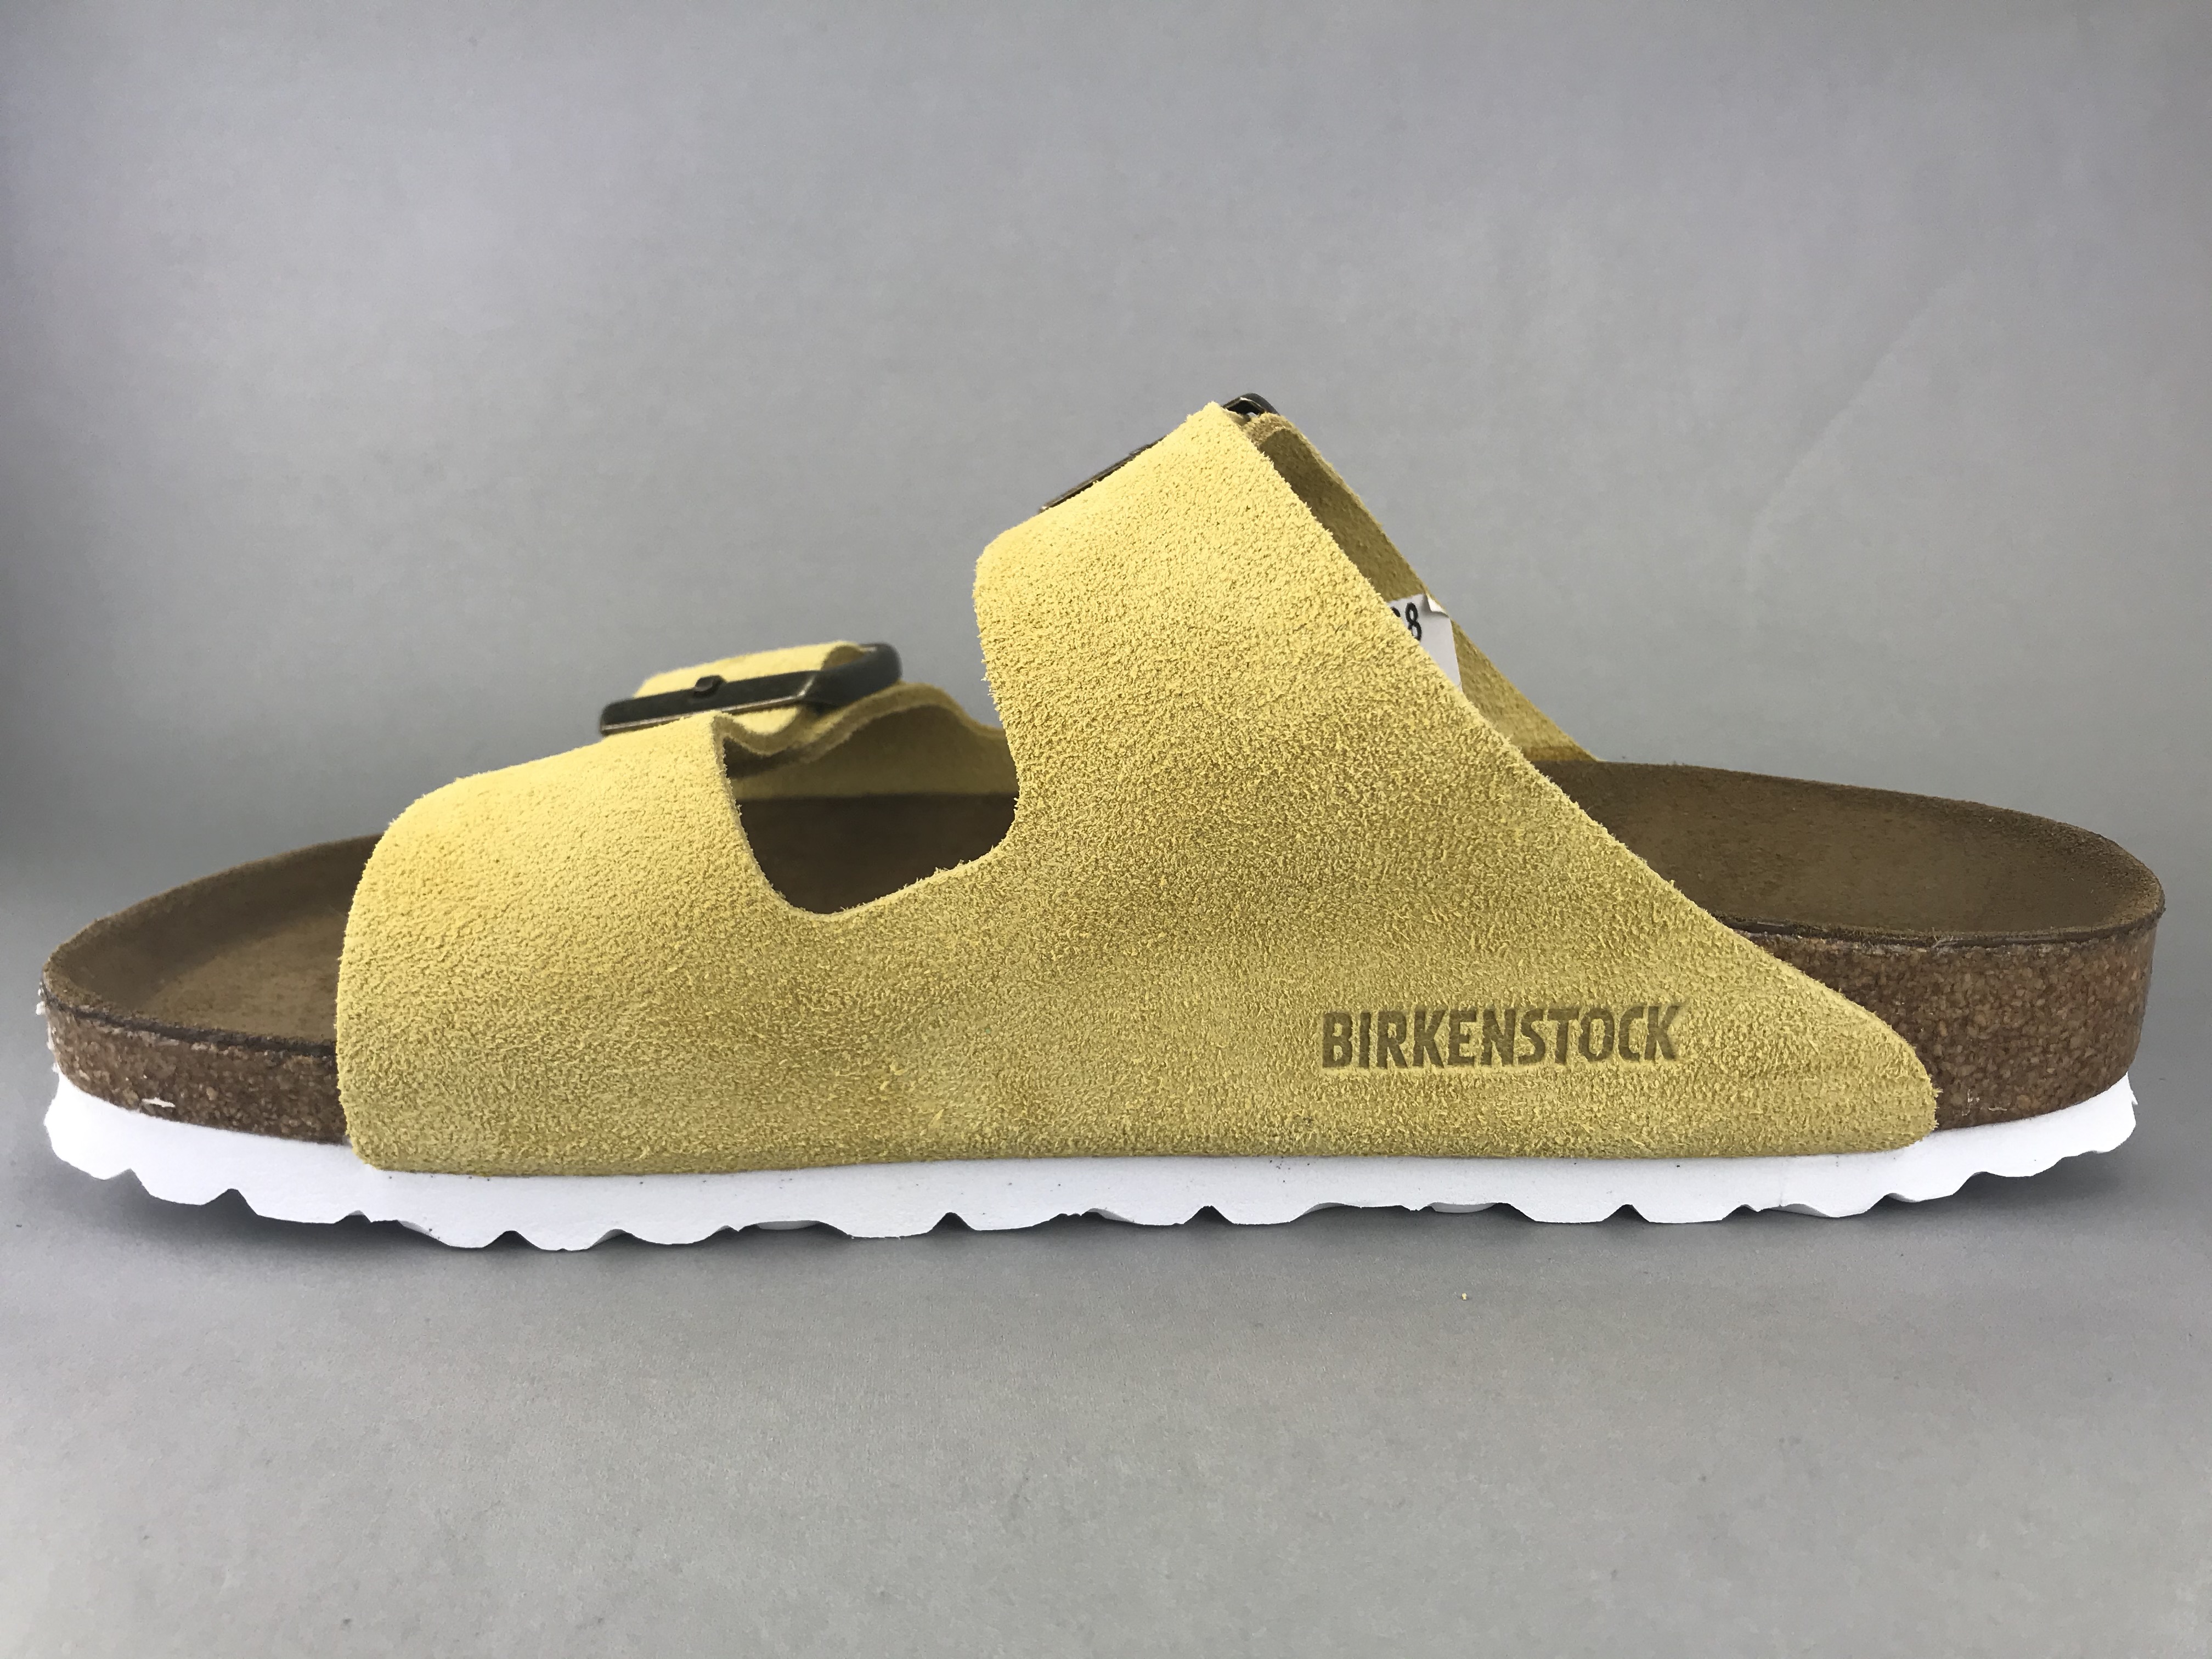 birkenstock soft footbed tilbud